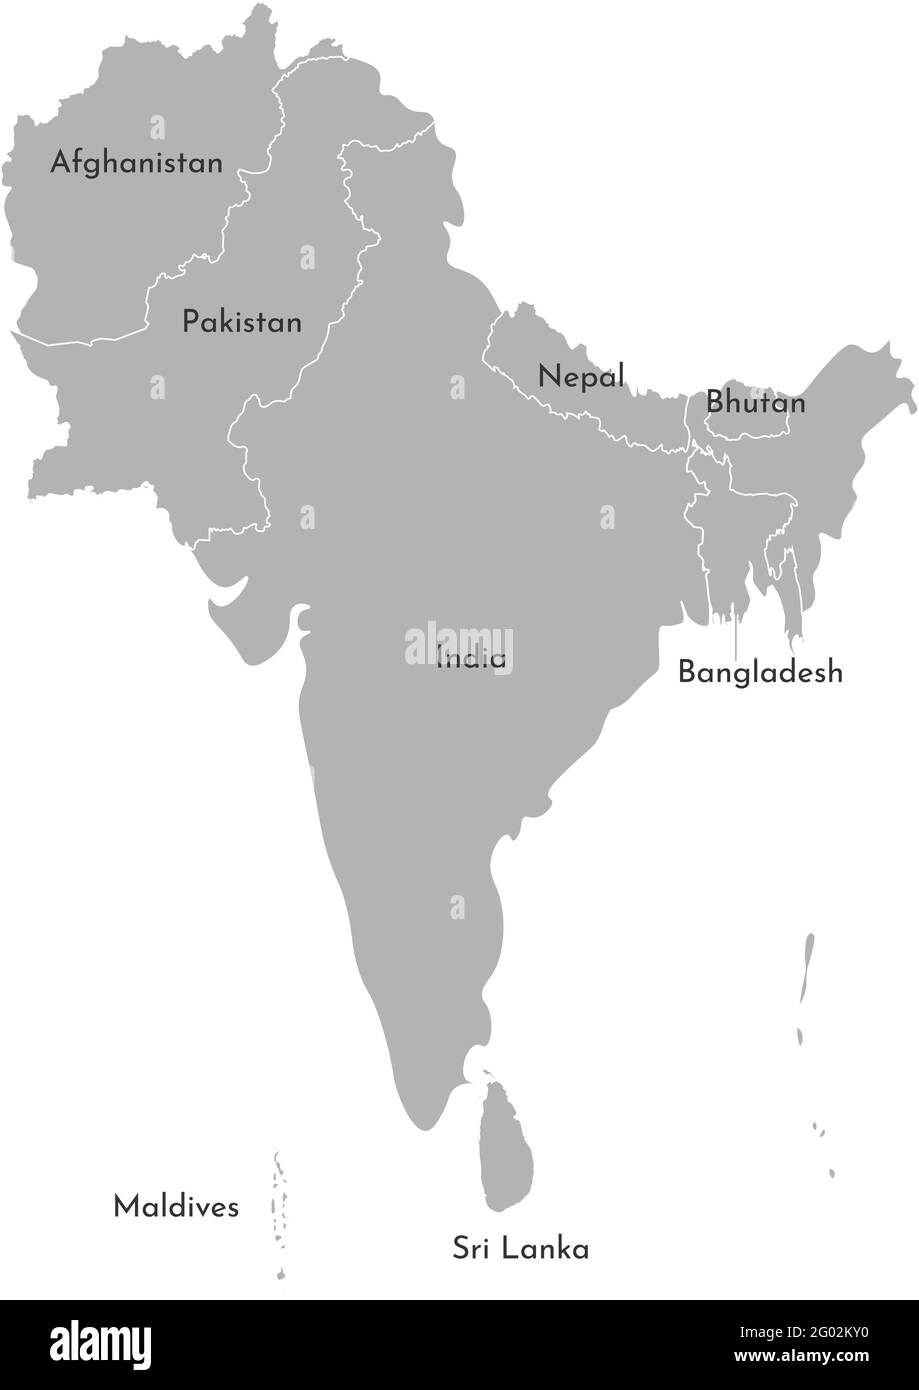 Carte vectorielle des pays asiatiques. Région du Sud. Etats frontières de l'Afghanistan, Pakistan, Inde, Maldives, Népal, Bhoutan, Banghladesh, Sri la Illustration de Vecteur